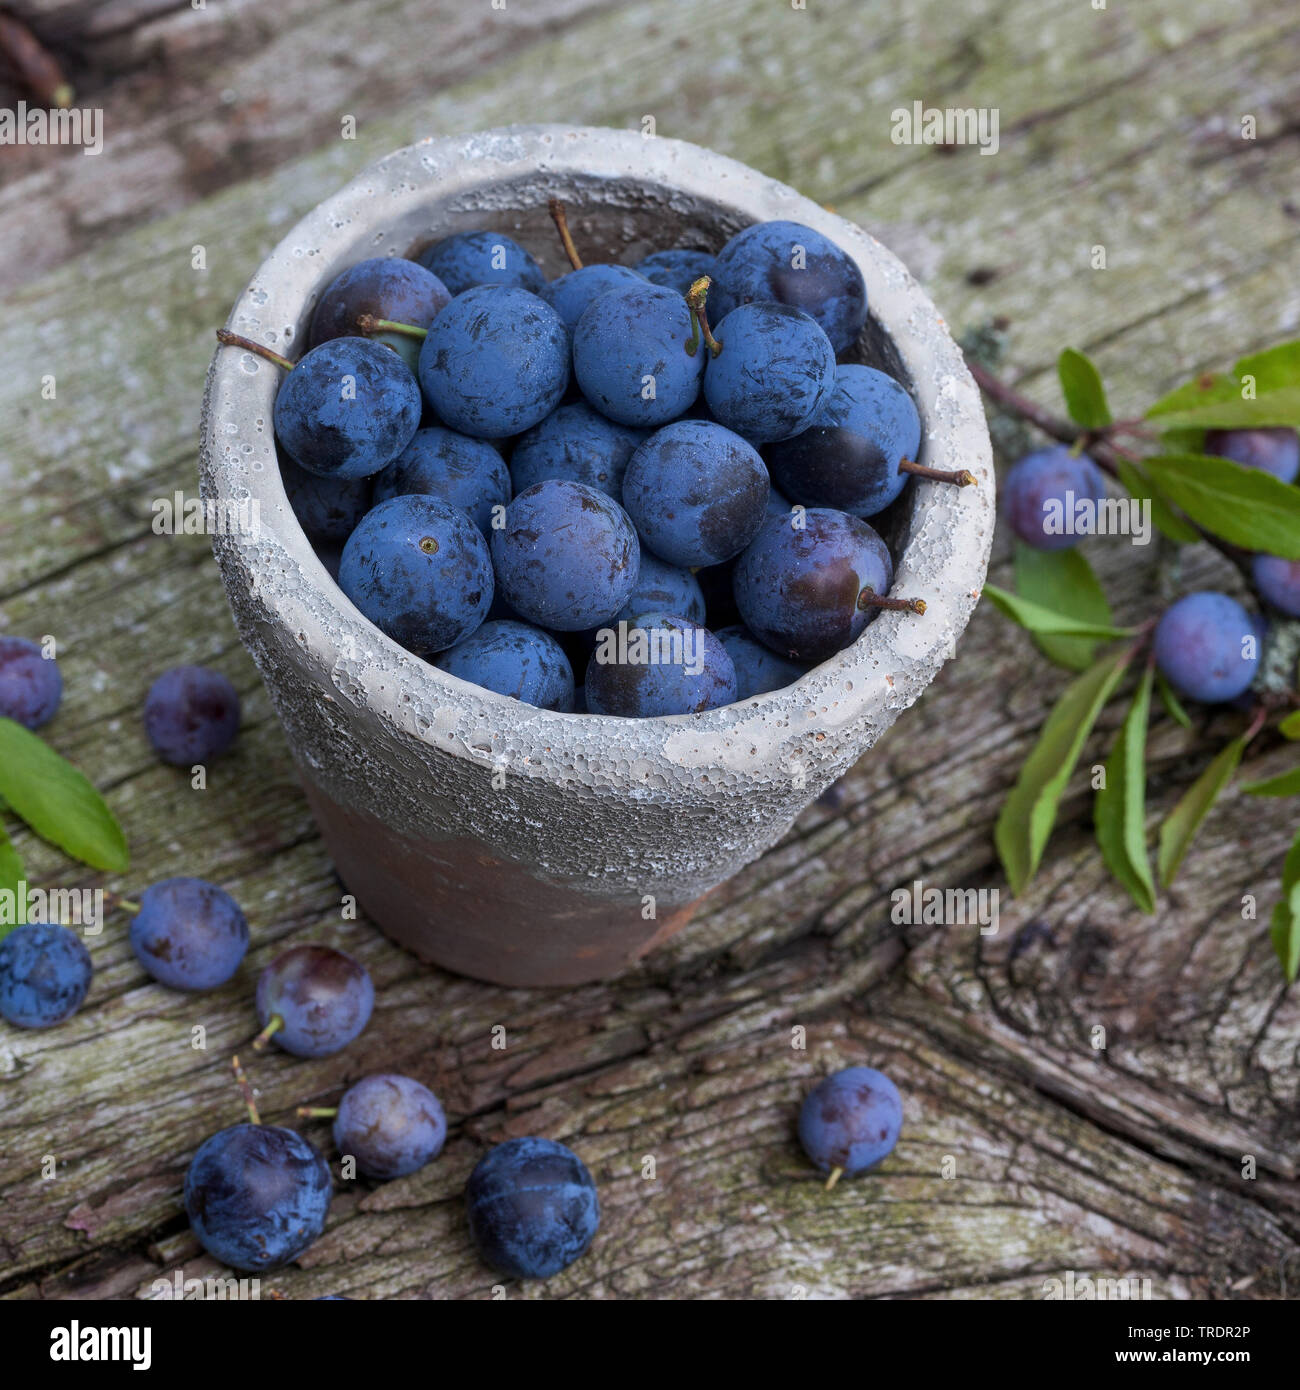 Blackthorn, Schlehe (Prunus spinosa), collectetd Früchte in einem Topf, Deutschland Stockfoto